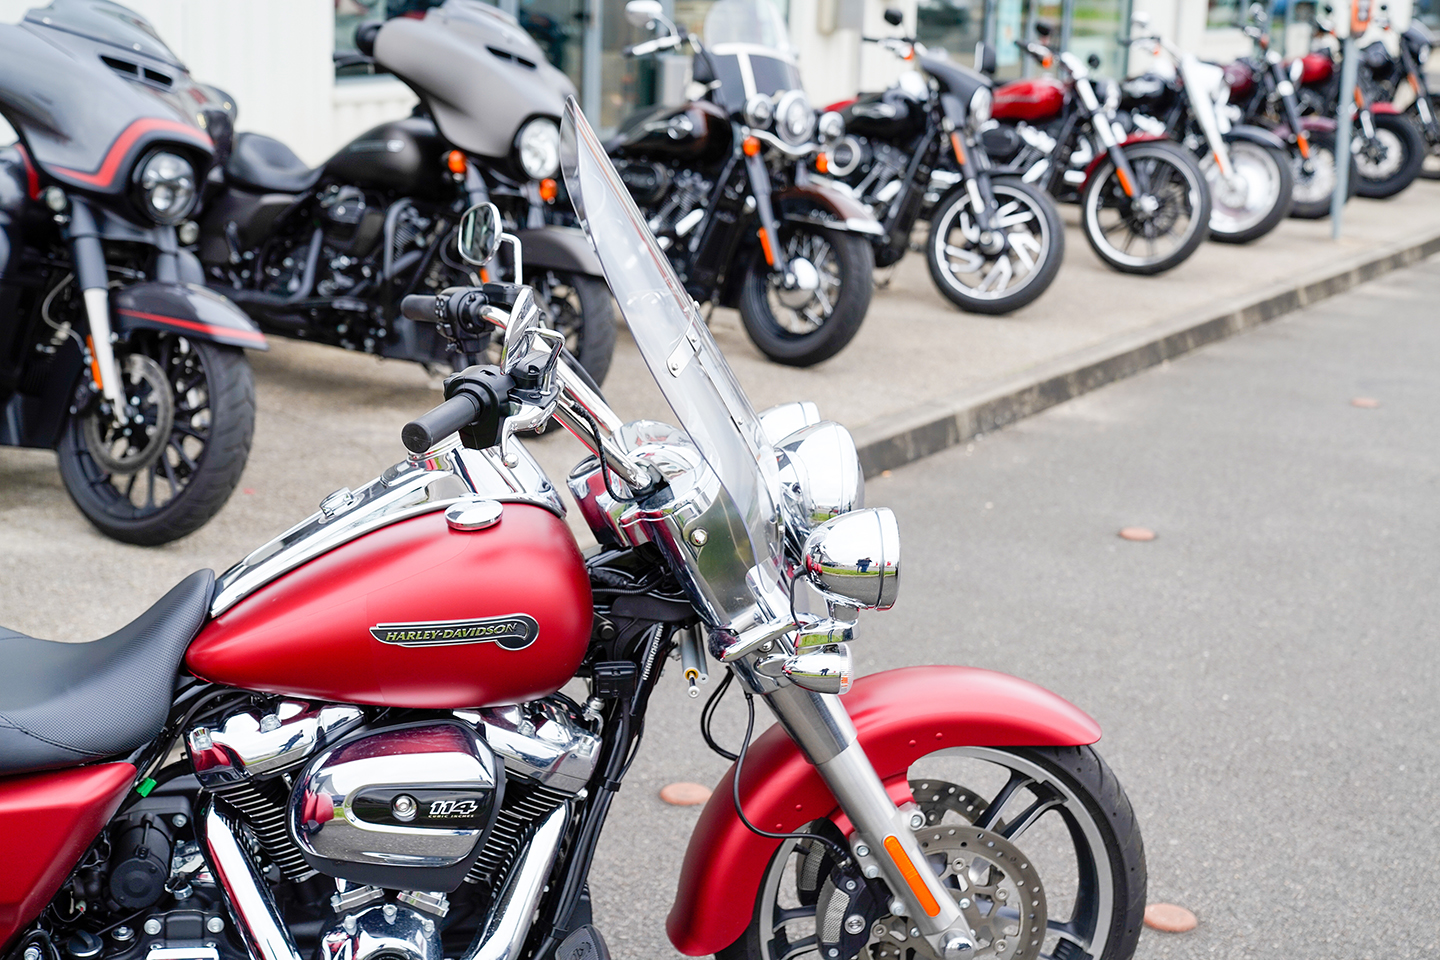 Nada Harley Davidson Motorcycle Values | Reviewmotors.co